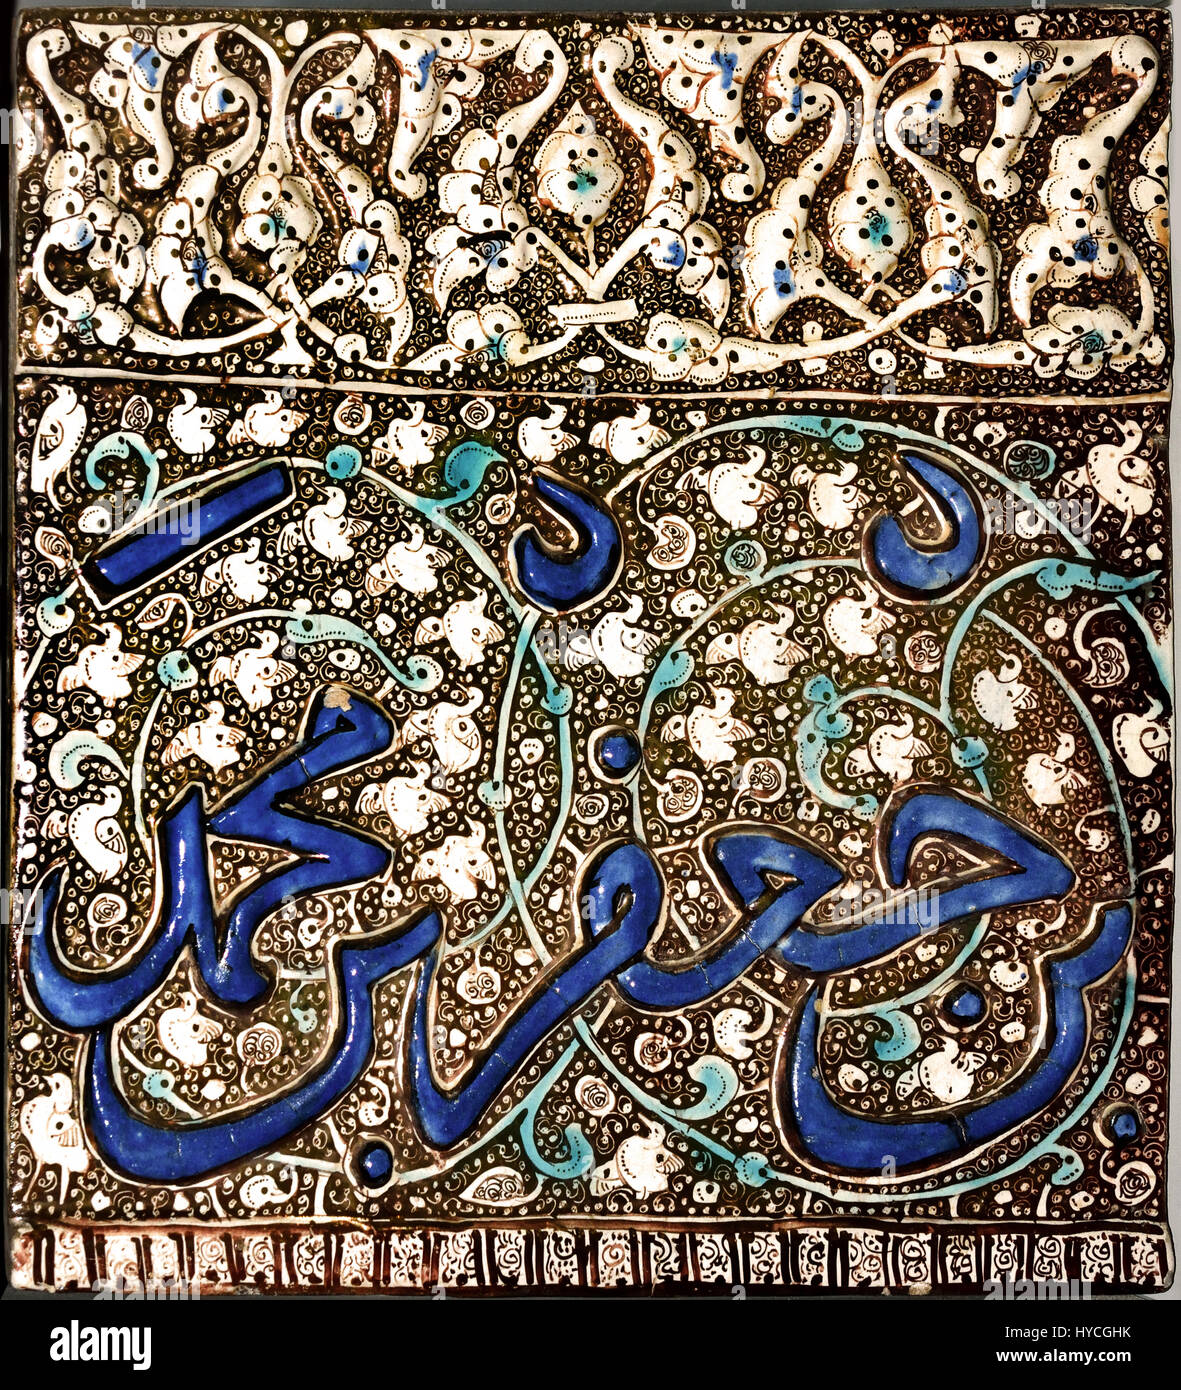 Mongol Glanz Fliesen 1310 Kashan - Ilchane Dynastie (Asien, Iran, Zentraliran, Isfahan) rechteckige Fries Fliese. blau, Türkis und Glanz über eine undurchsichtige weiße Glasur. Am obere Rand ist dekoriert mit einer Bandbreite von Lotus und Pfingstrose Blüten auf einem lustred Hintergrund mit Spiralen eingeschnitten. Das Hauptregister trägt Teil einer Inschrift (mit Datum) in geformten Relief, gemalt in blau vor dem lustered Hintergrund eines foliate ranken. Die schmale untere Grenze gliedert sich in quadratische Fächer mit einem abstrakten Design. Einige Teile der Dekoration werden durch Spritzer von geschönten hervorgehoben. Stockfoto